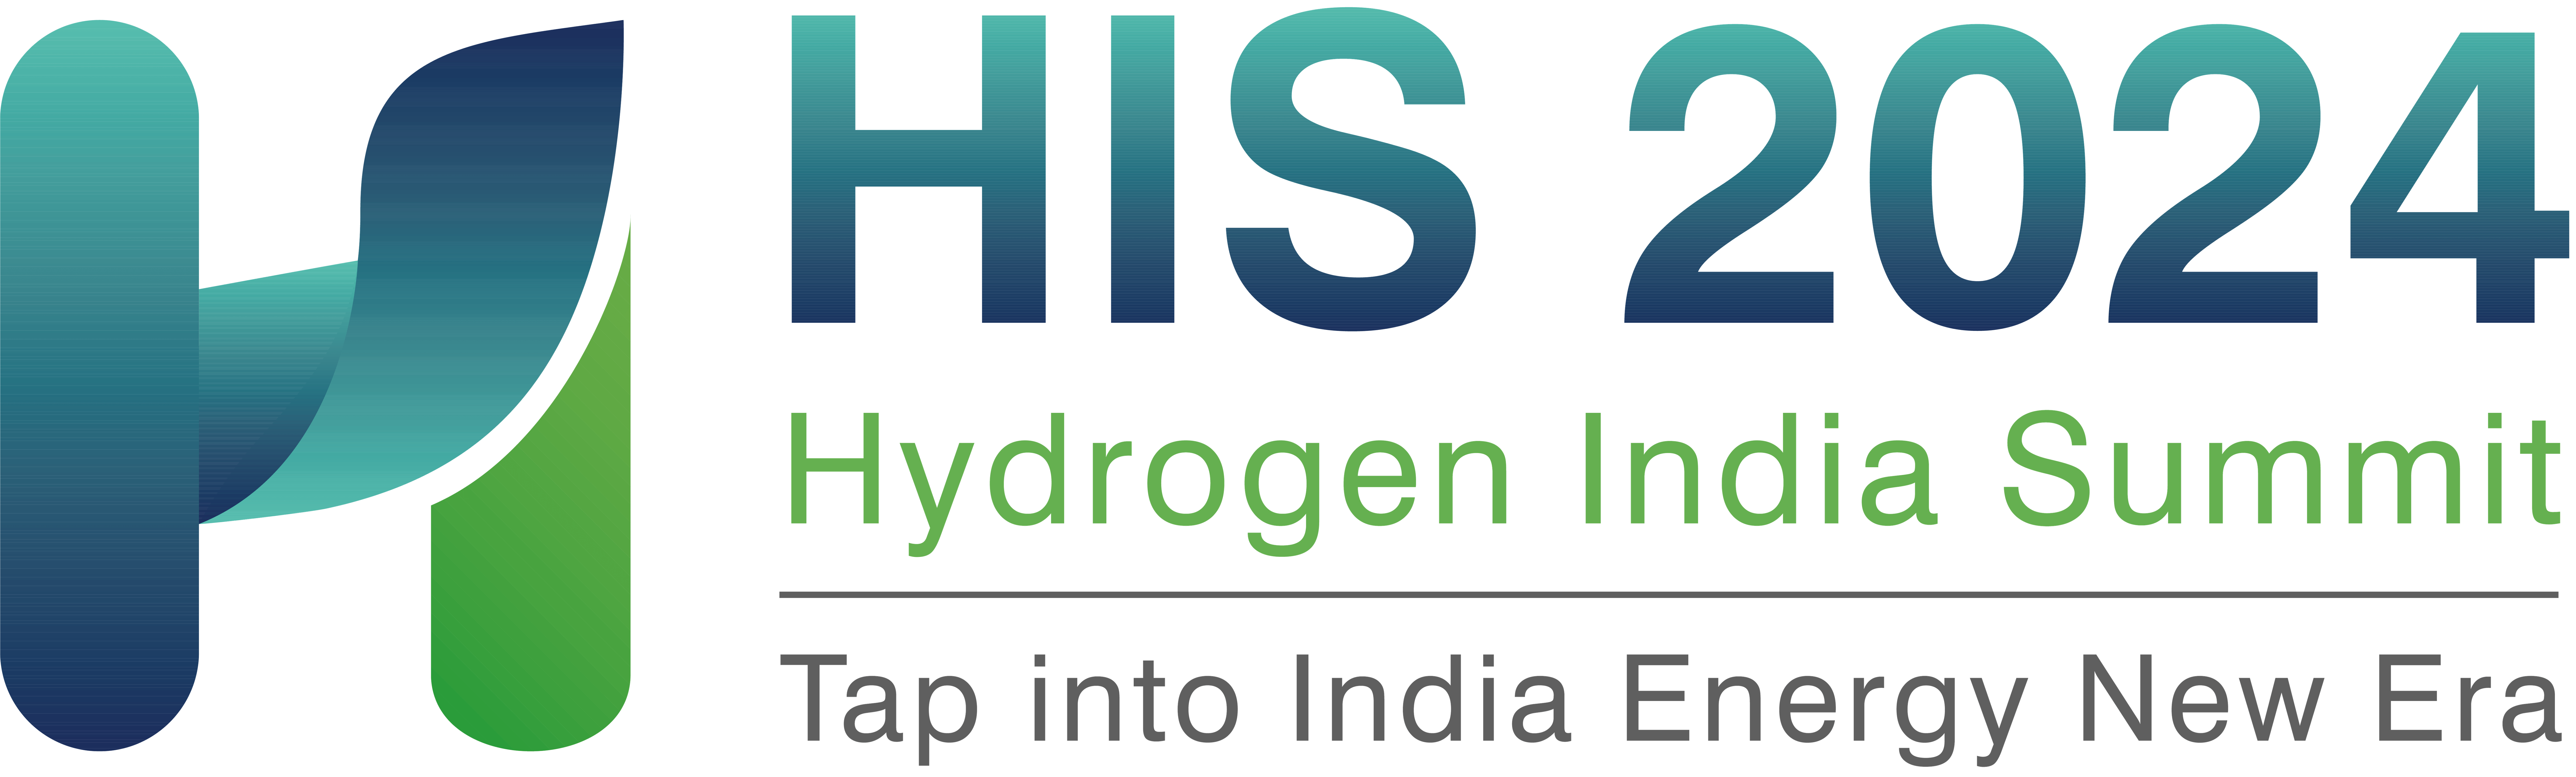 indiahydrogen2022